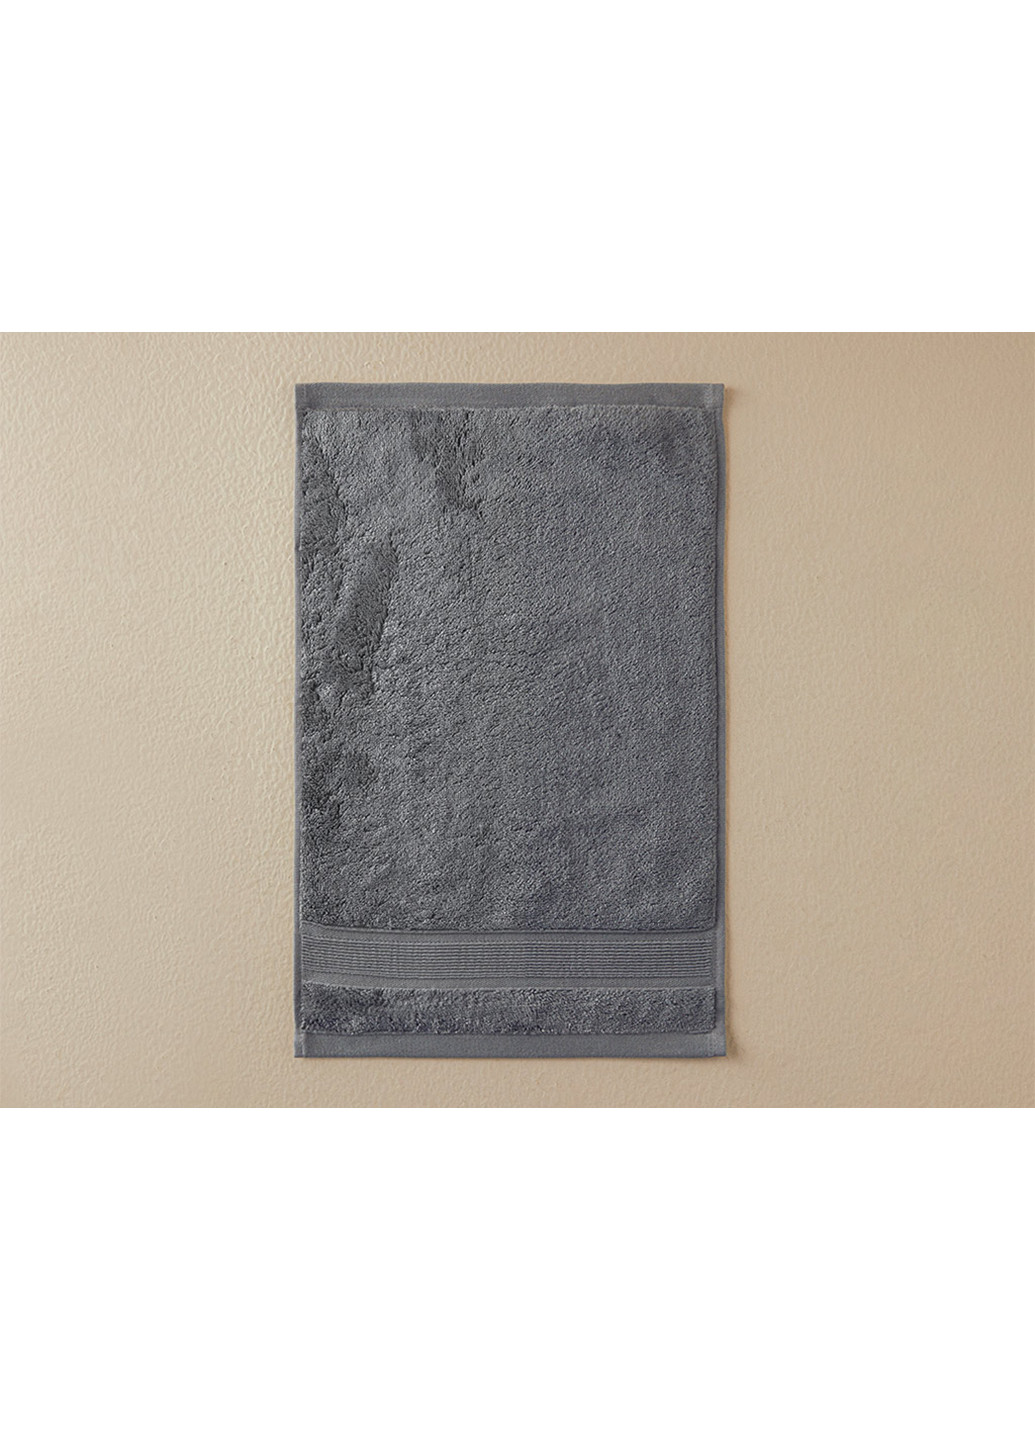 English Home полотенце для рук, 30х45 см однотонный темно-серый производство - Турция